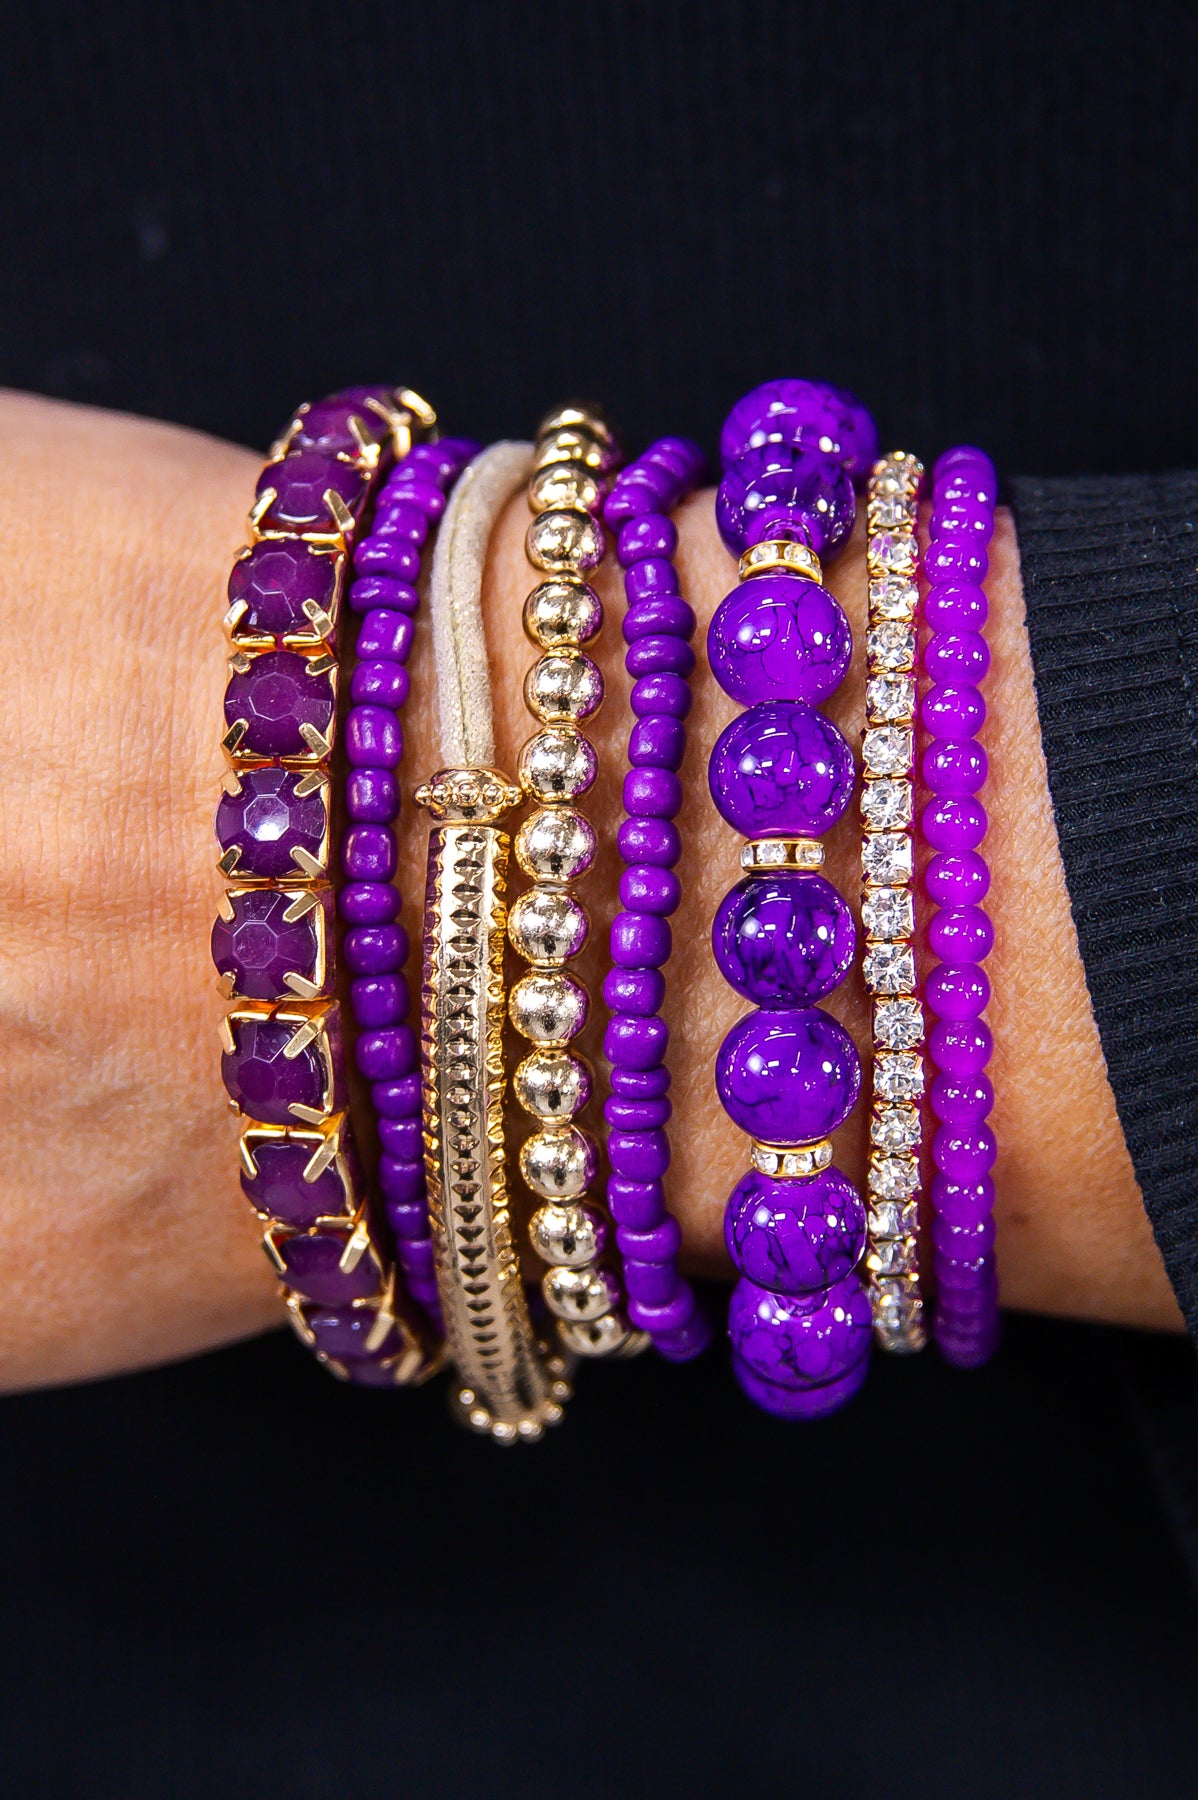 Dark Purple/Gold Stackable Bracelets - BRC3380DPU